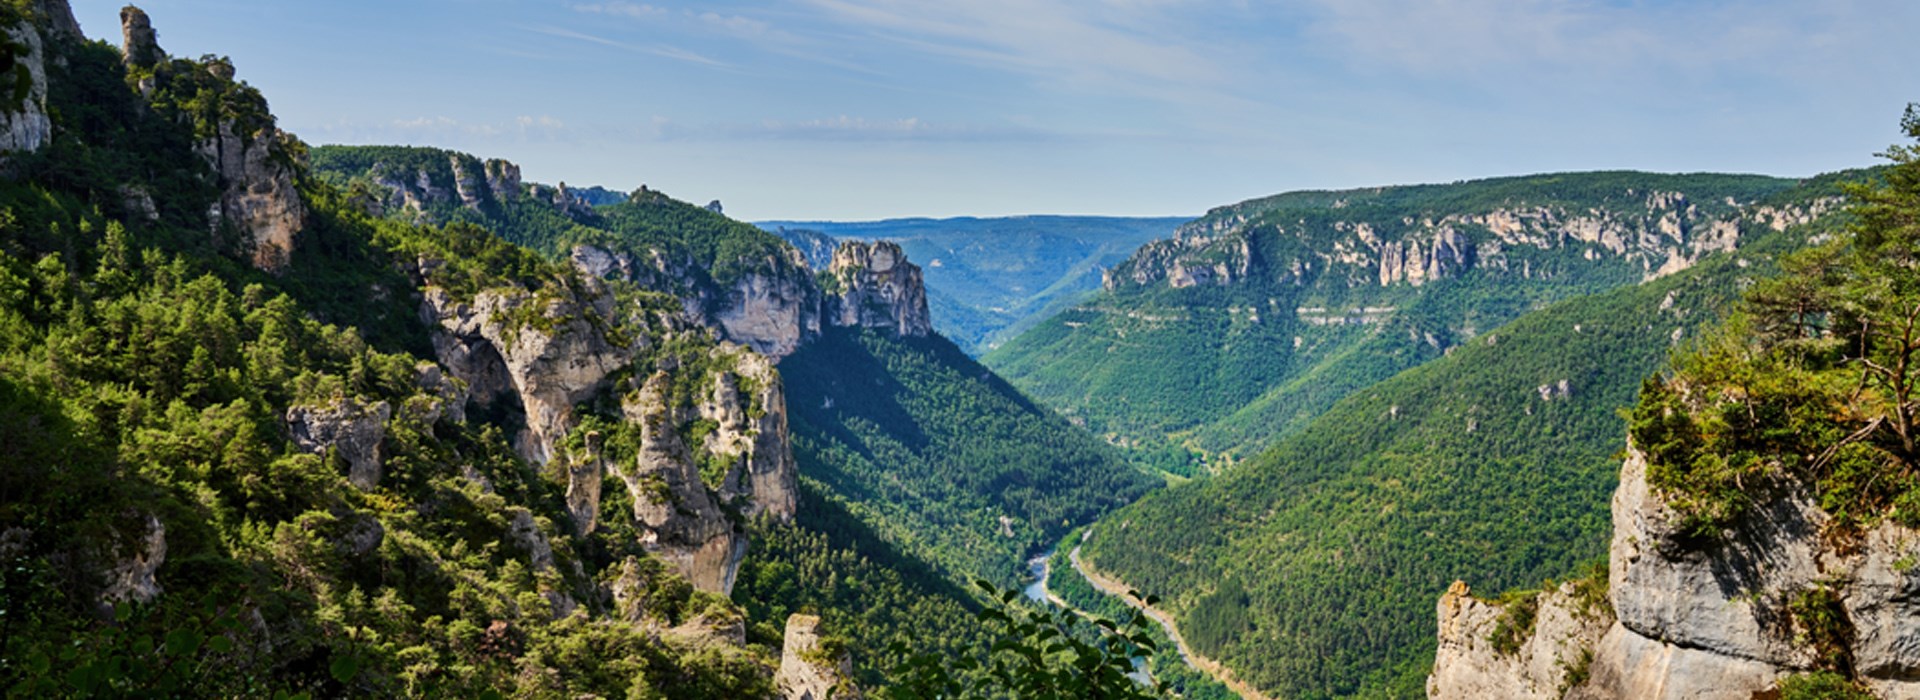 Visiter Les Gorges du Tarn - Occitanie